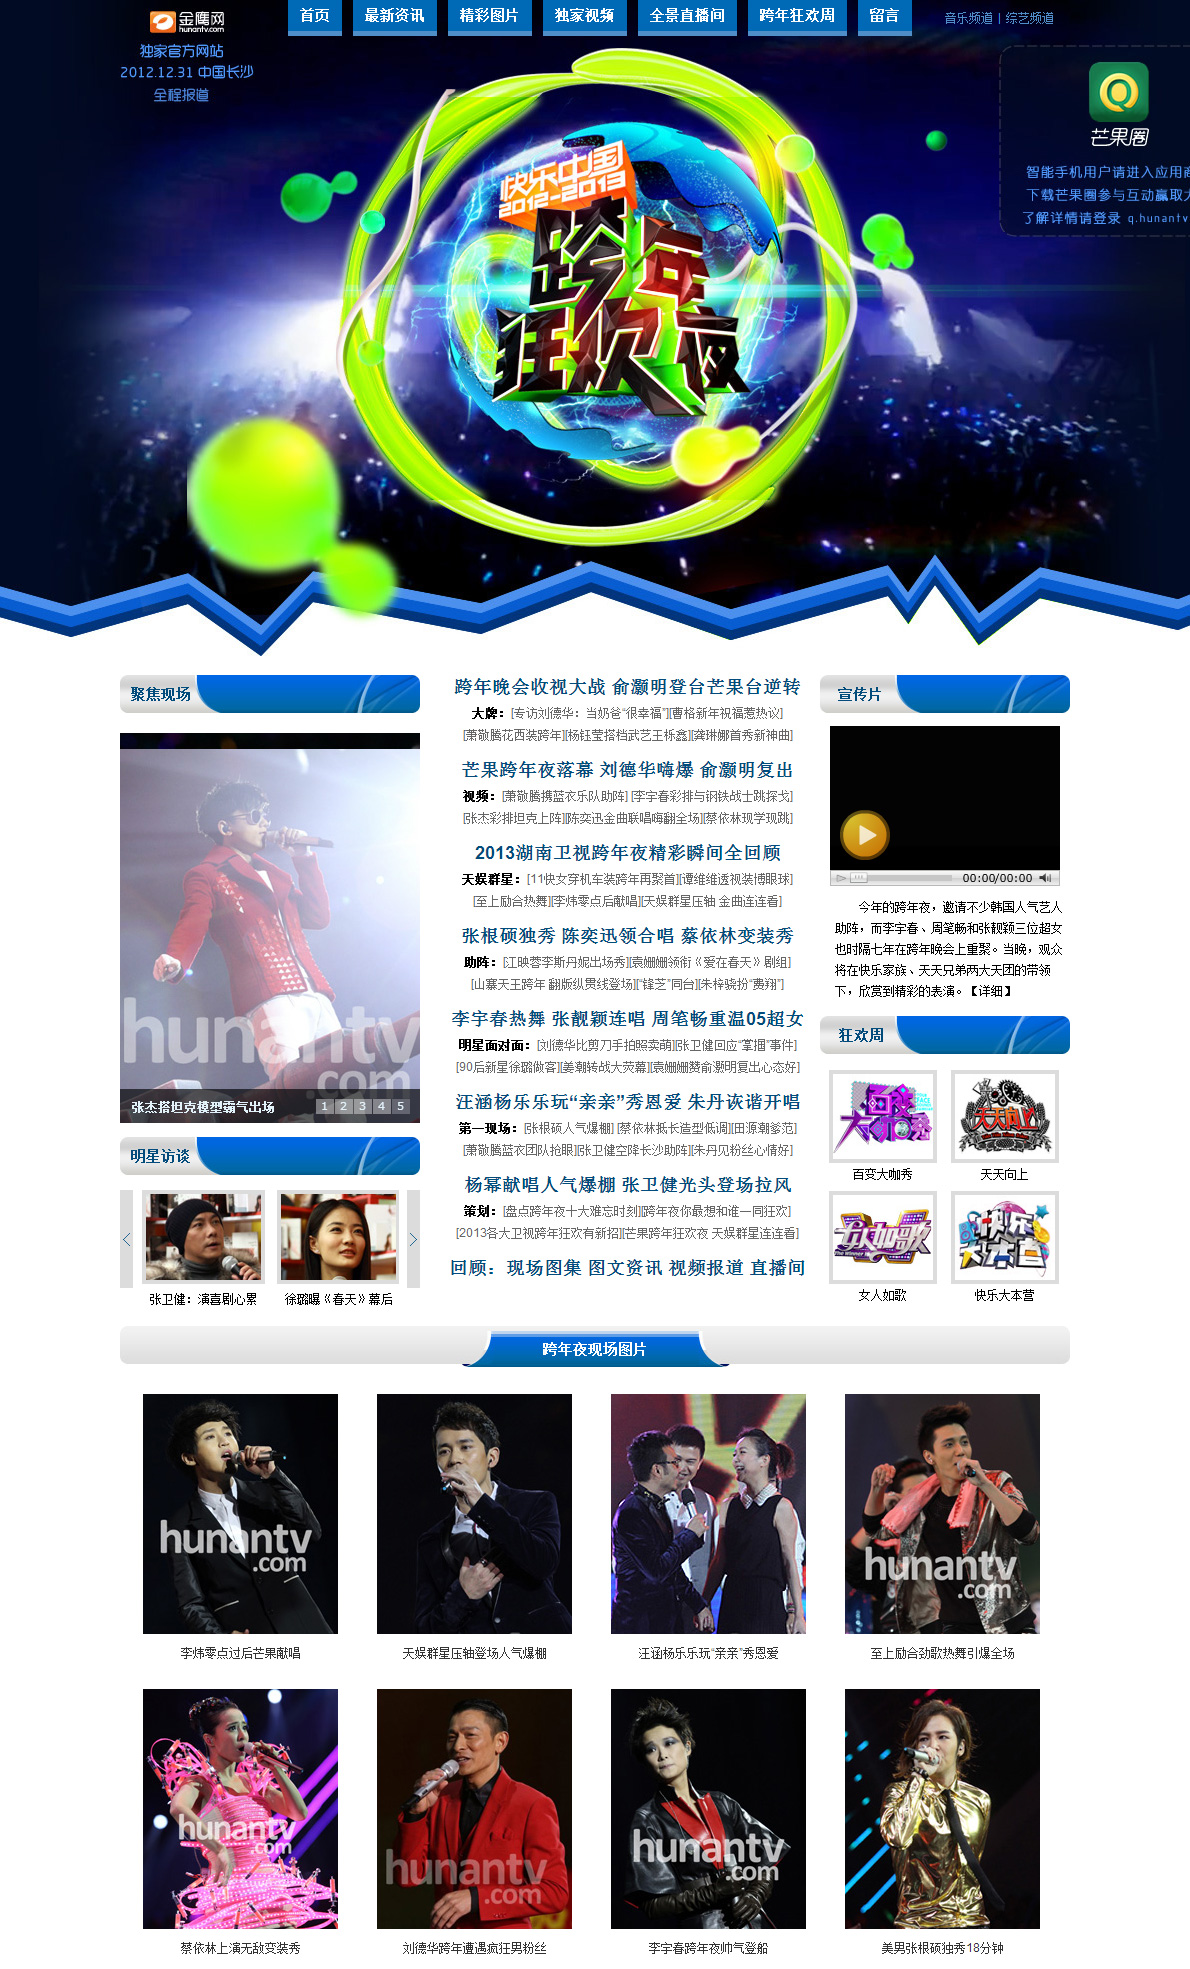 2013年湖南卫视跨年狂欢夜专题设计